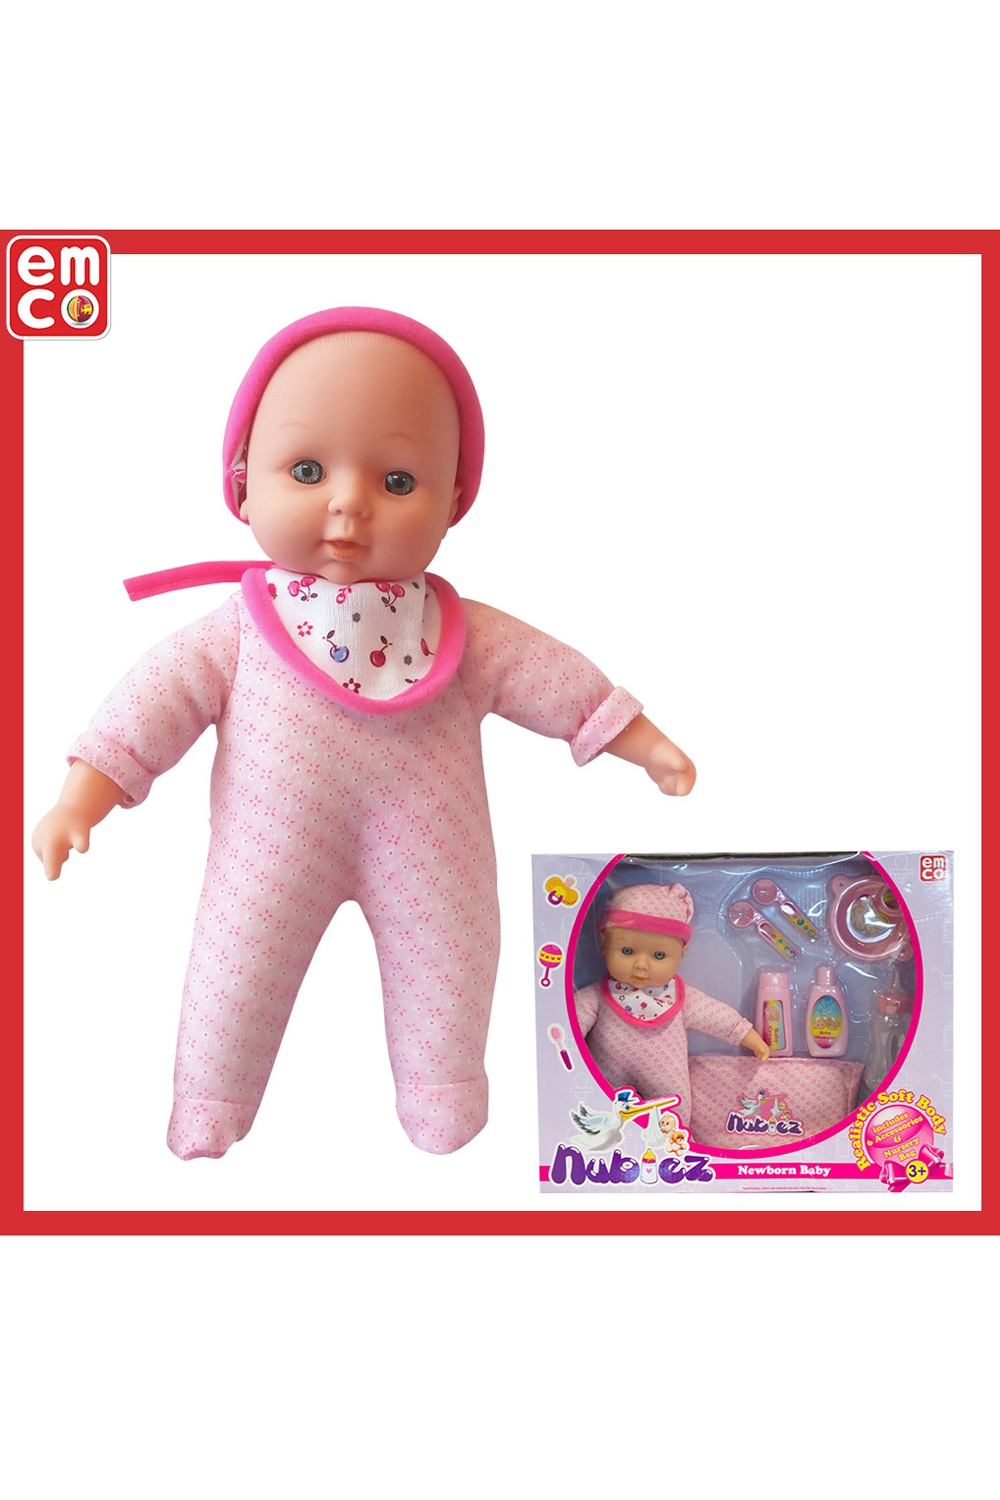 EMCO Nubies Pink Baby Doll | Odel.lk